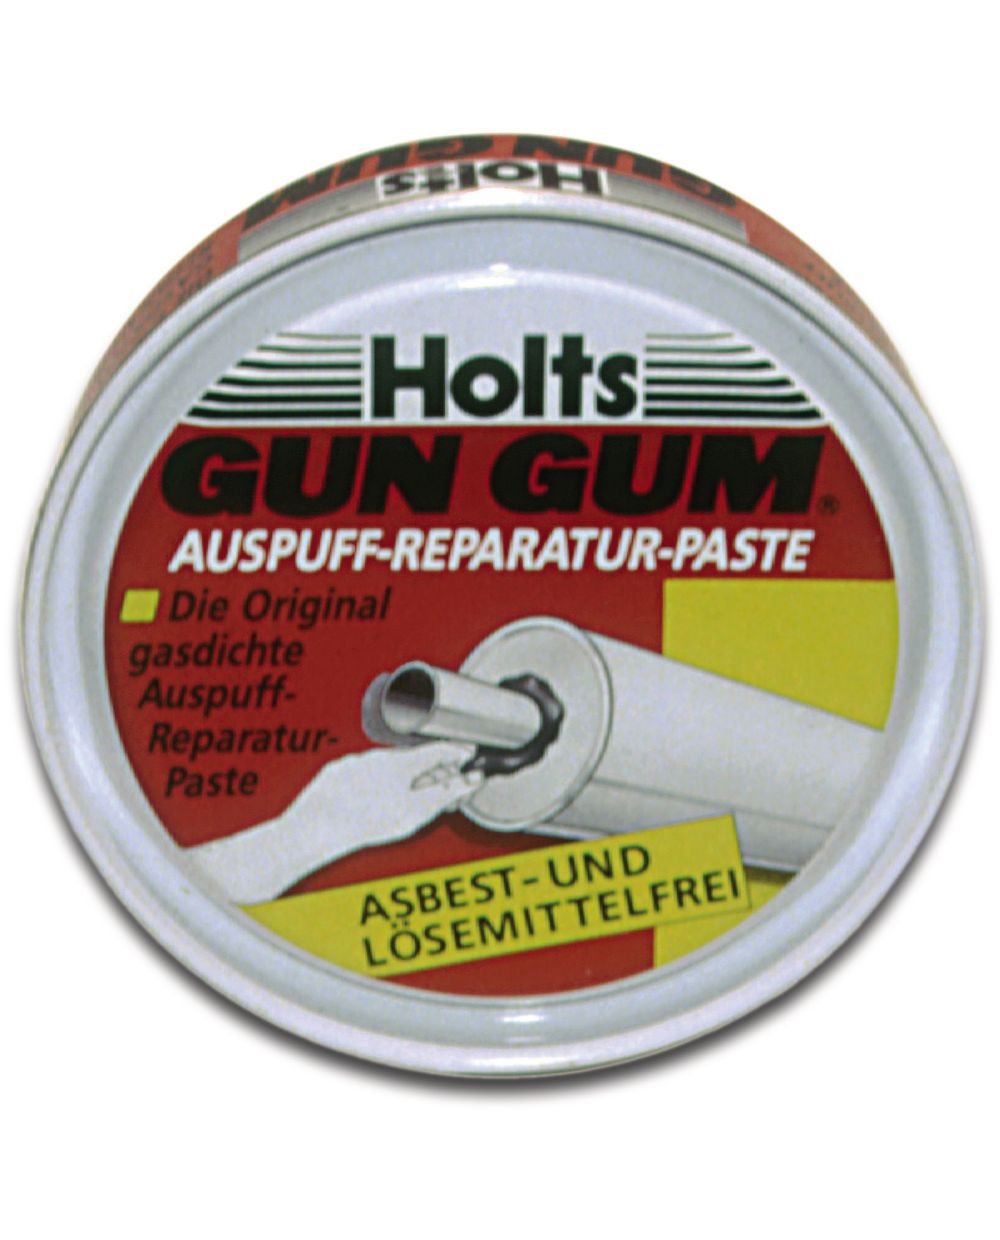 HOLTS GUN GUM Spachtelmasse für Auspuffreparaturen - Topf - 200g - UC10040  